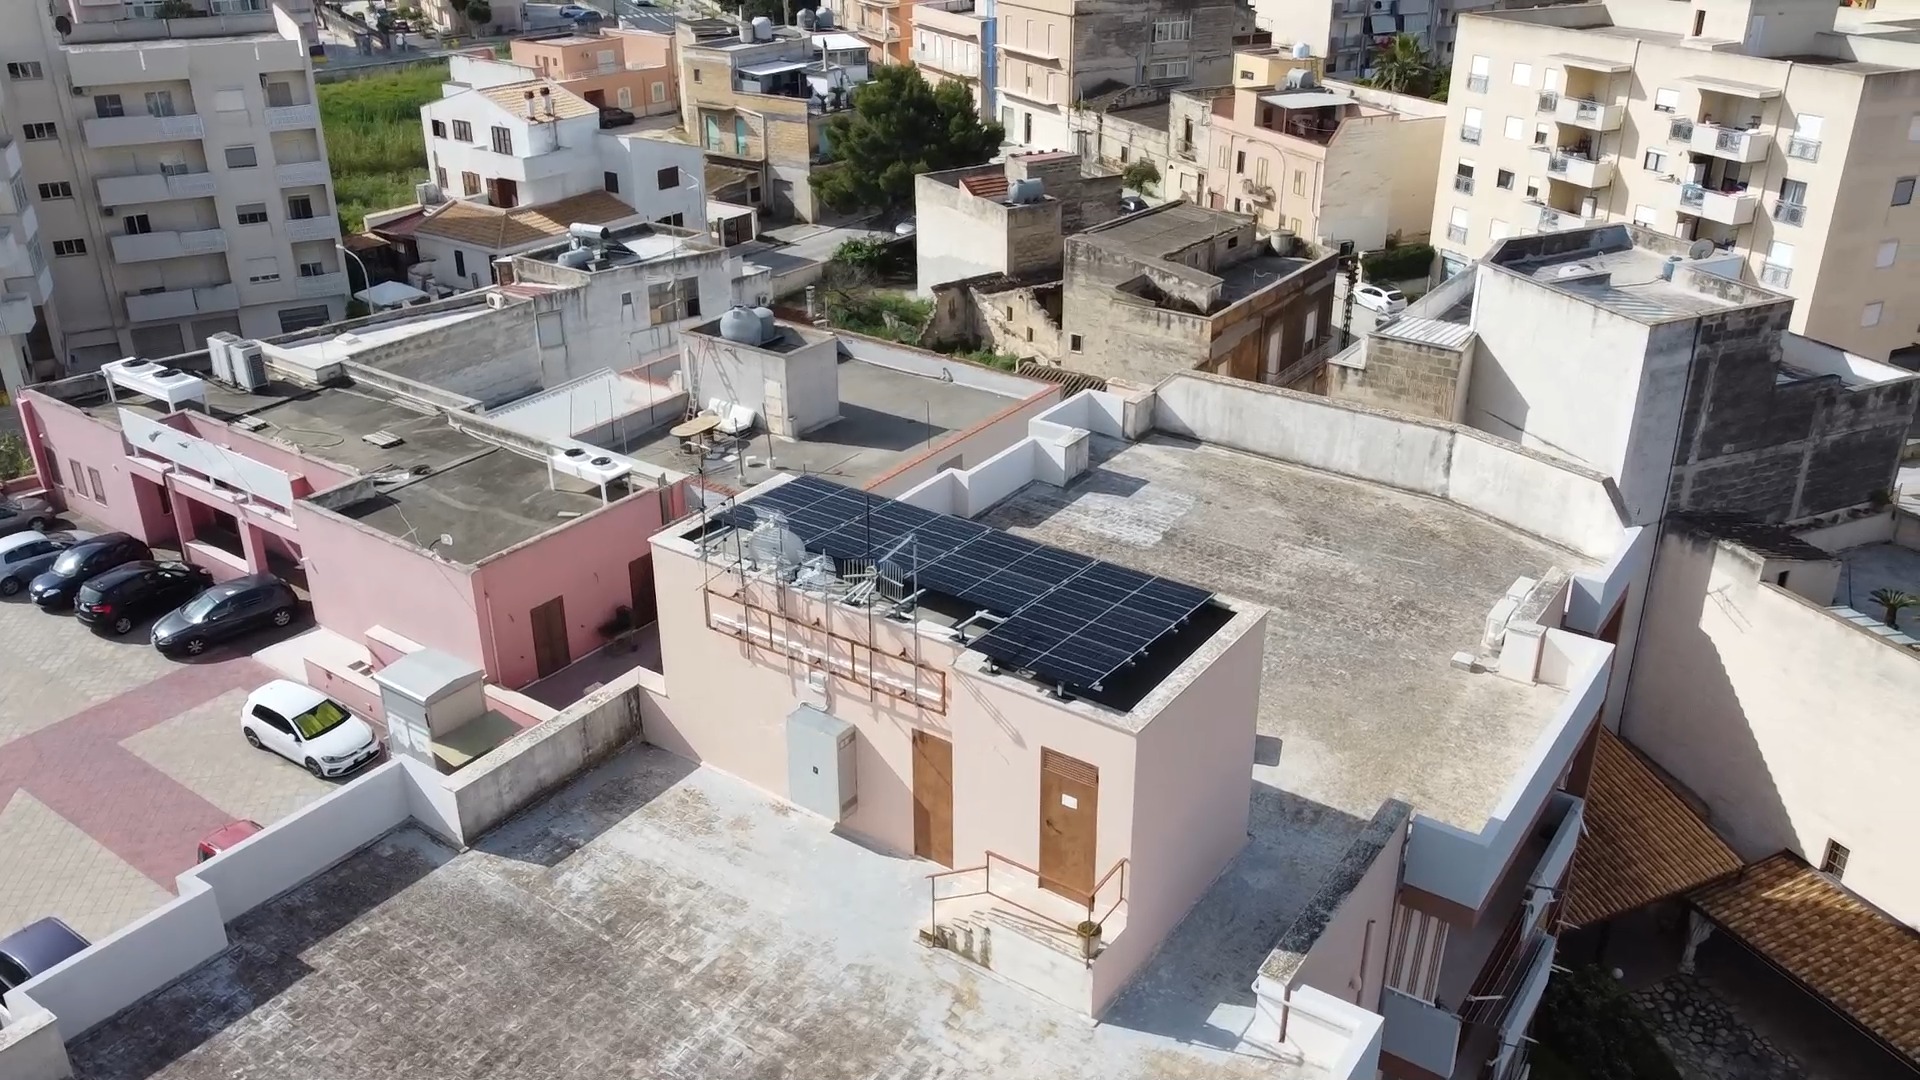 ✅ Nuova installazione

➡ Impianto #fotovoltaico in un condominio a Paceco